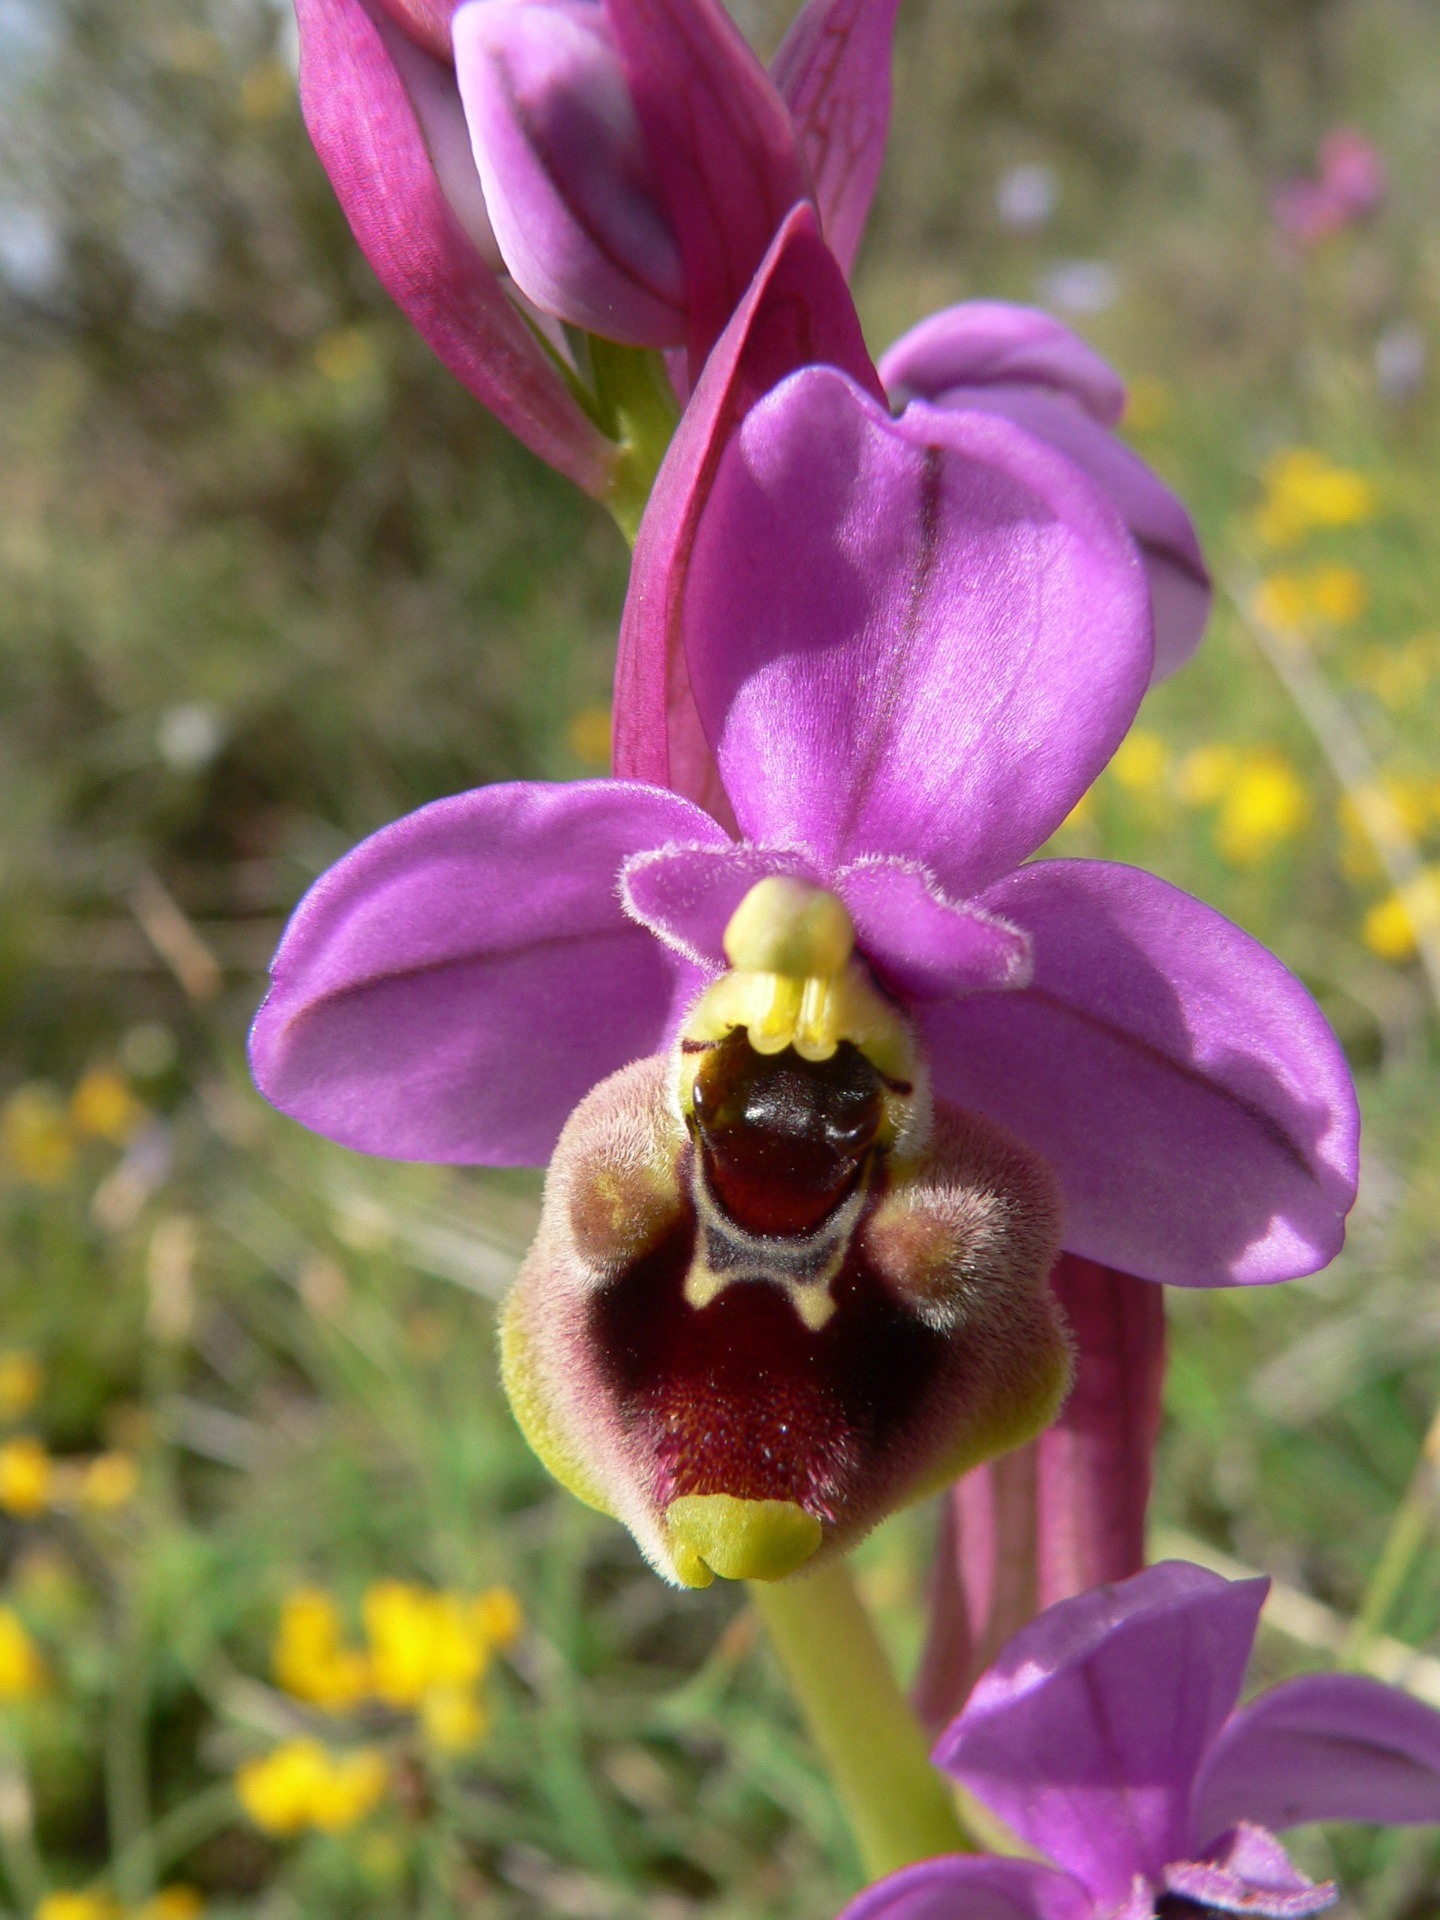  flor de orquidea en el campo